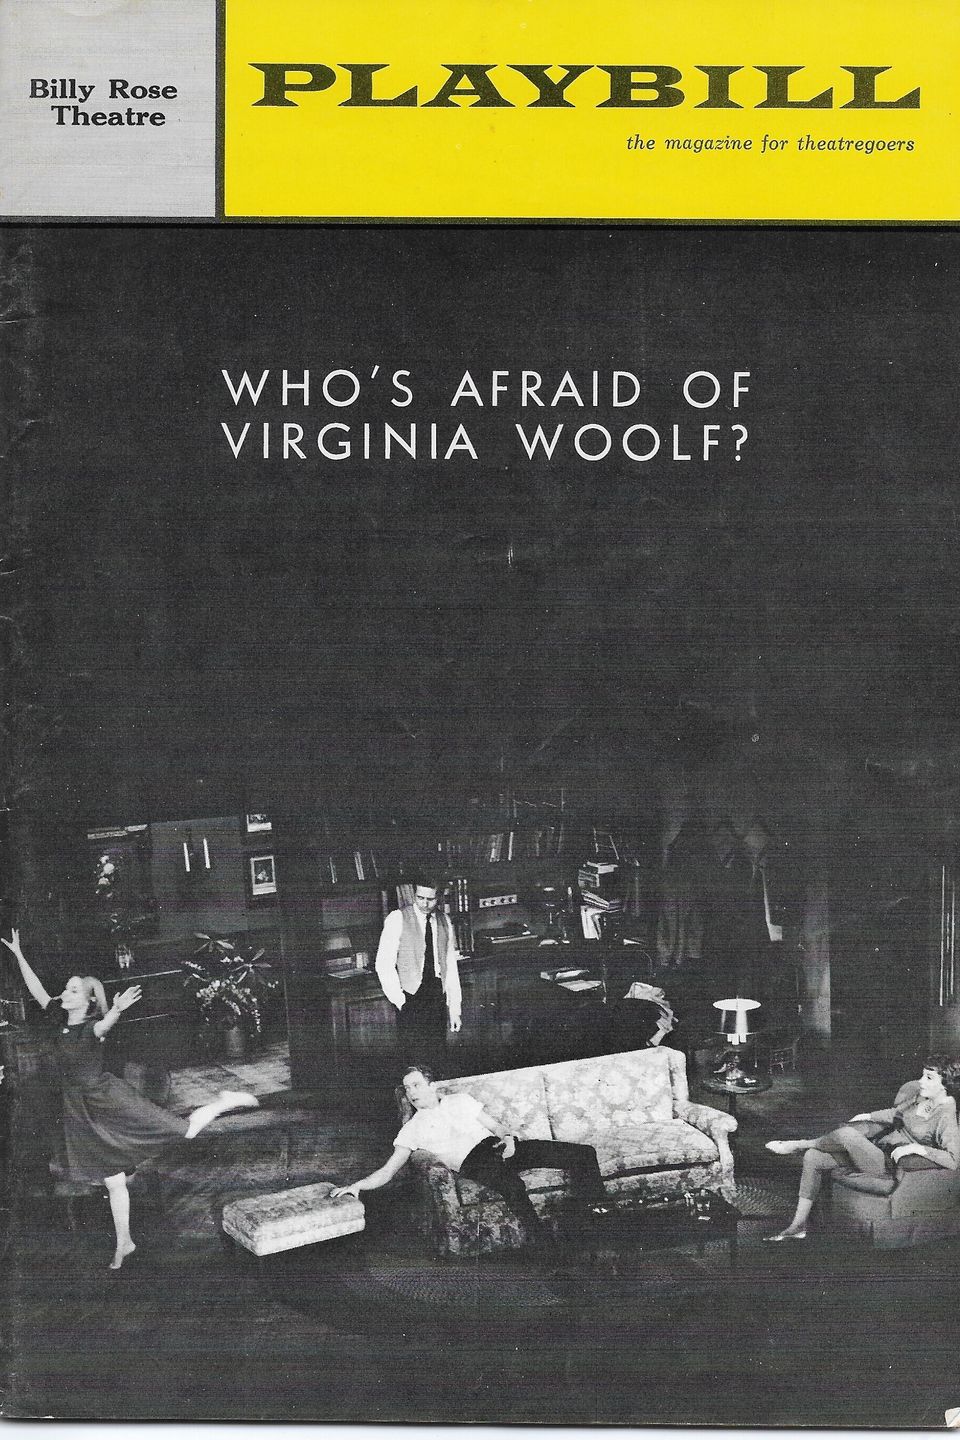 Whos afraid of virginia woolf